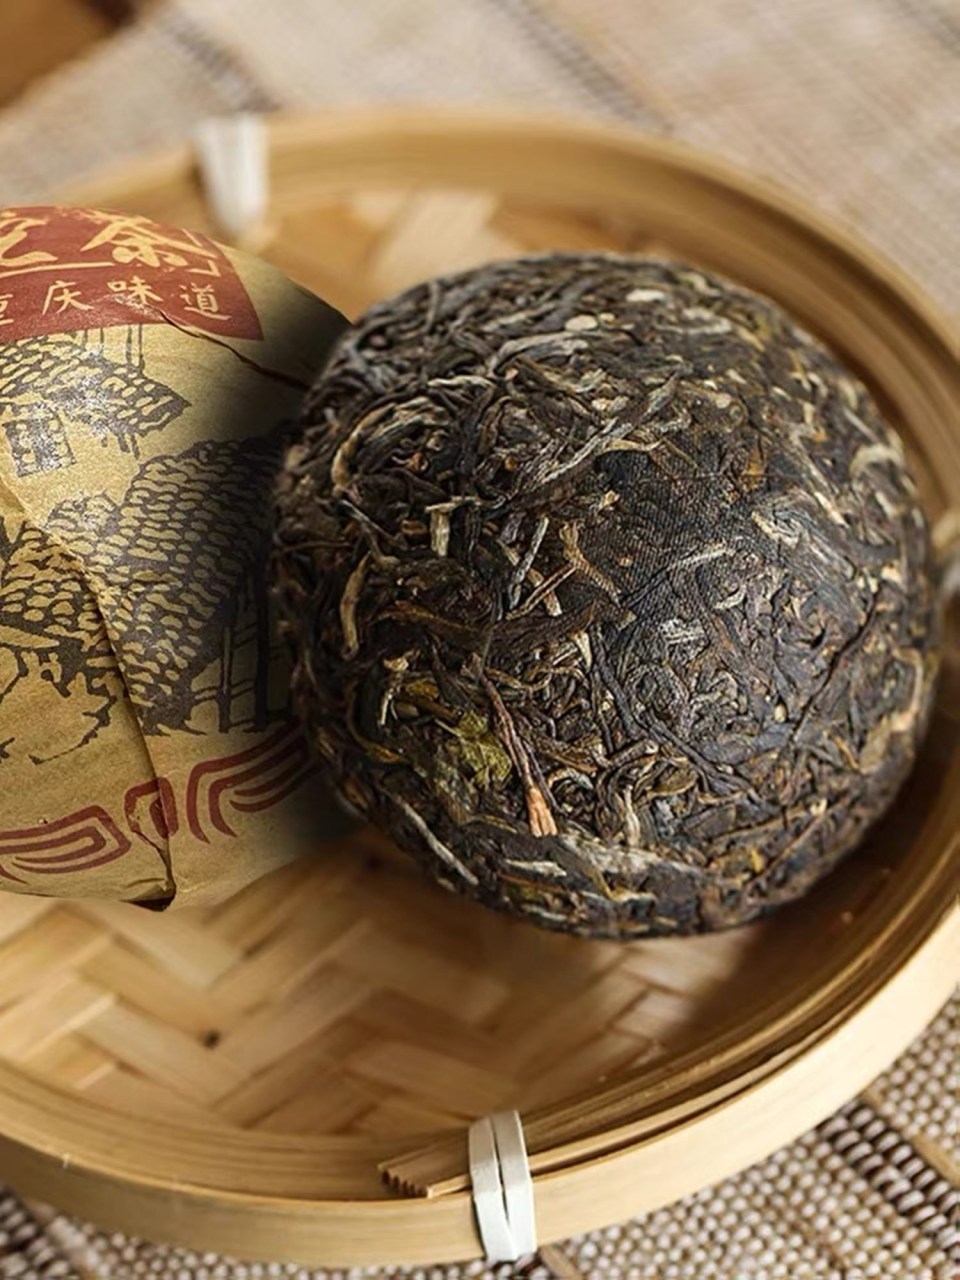 原创被淡化的重庆符号,山城沱茶曾经随处可见,为何一度停止生产?